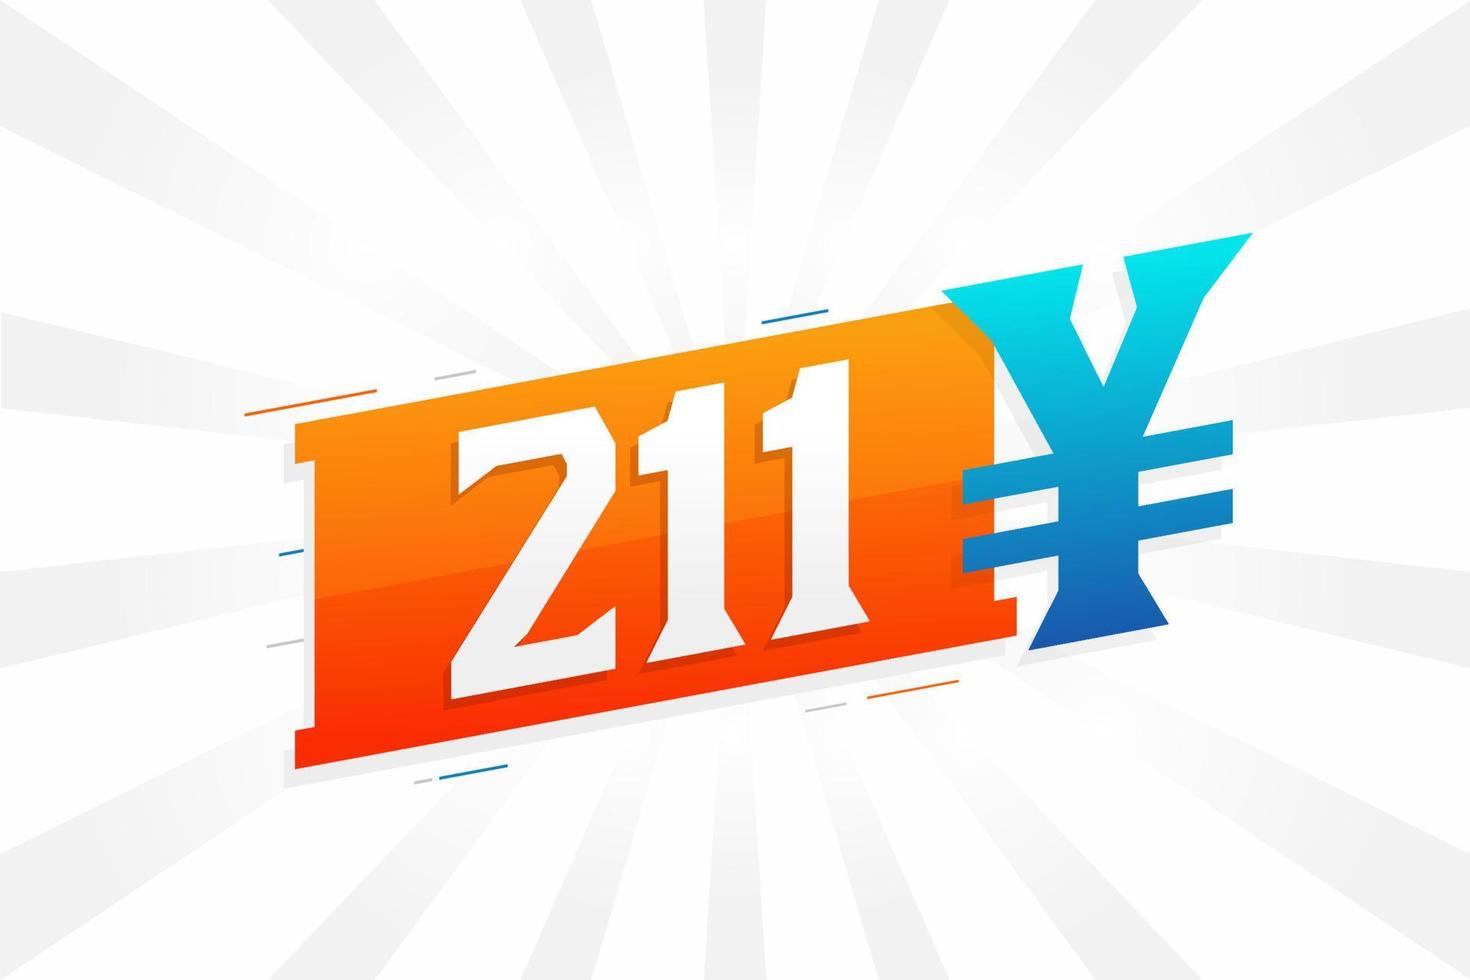 211 Yuan chinesische Währung Vektortextsymbol. 211 Yen japanische Währung Geld Aktienvektor vektor